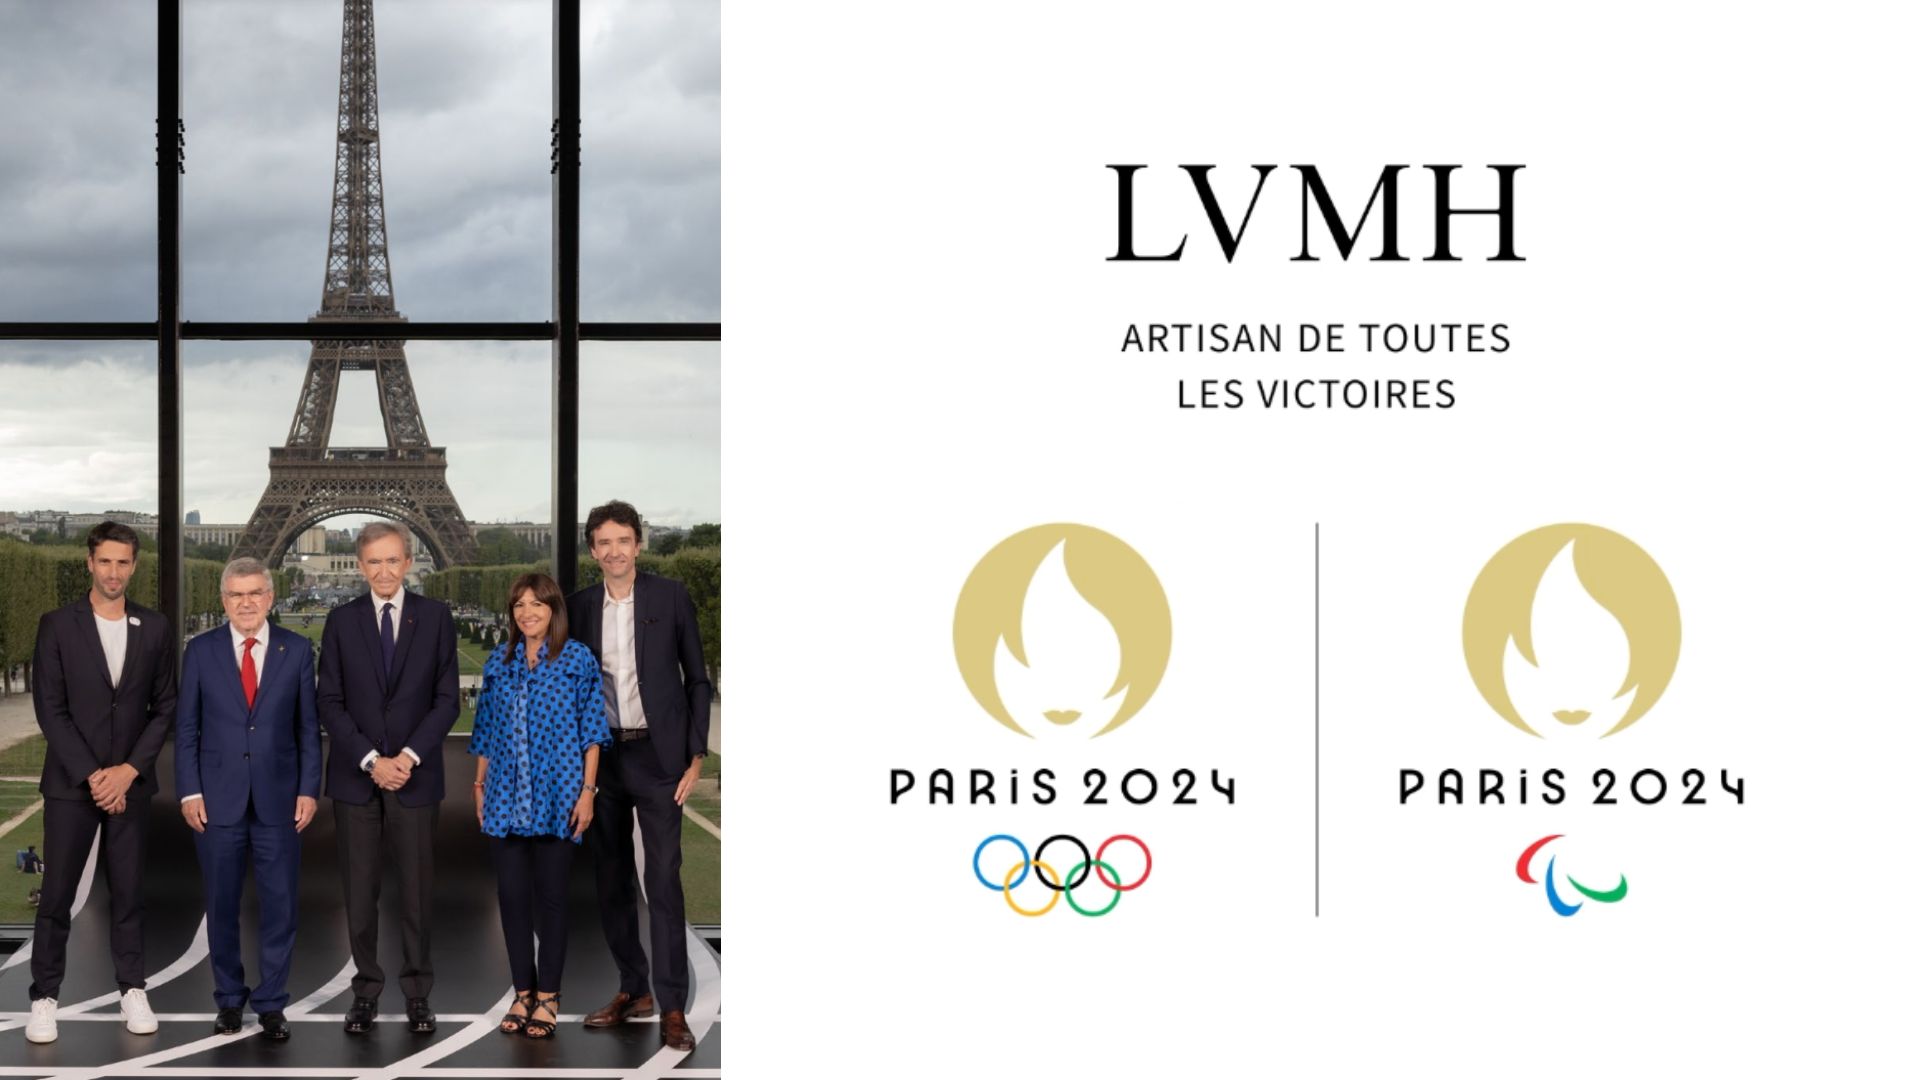 Paris 2024 : LVMH devient partenaire des Jeux, son joaillier